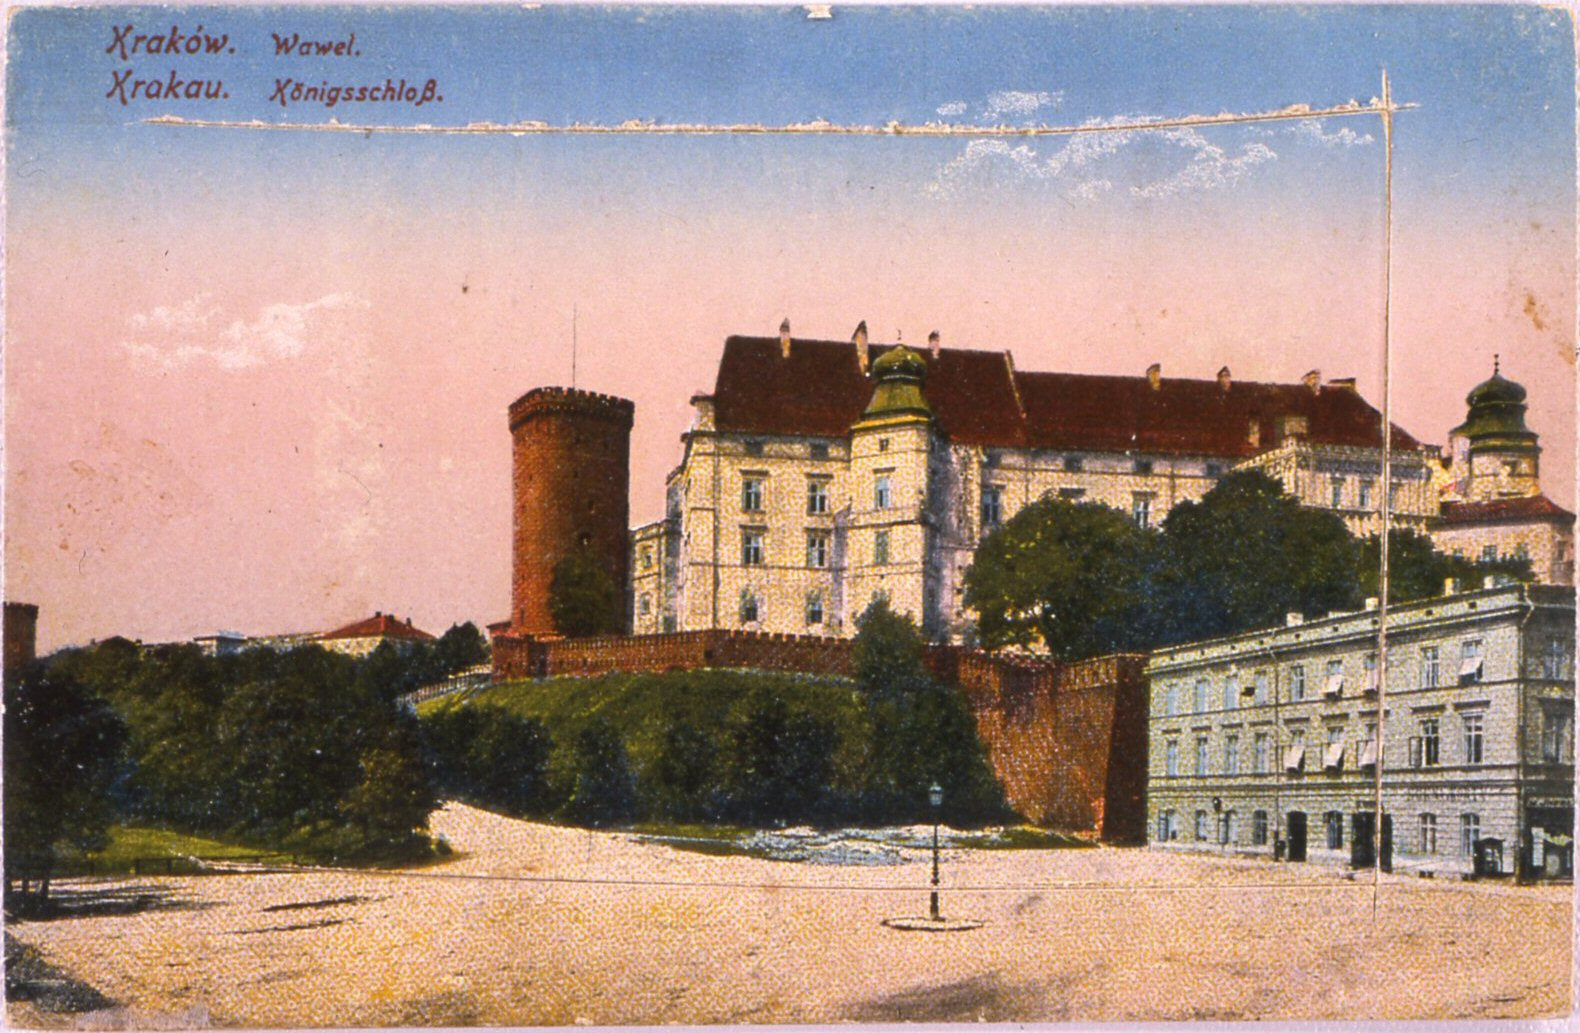 cartolina: il castello reale di wawel a cracovia